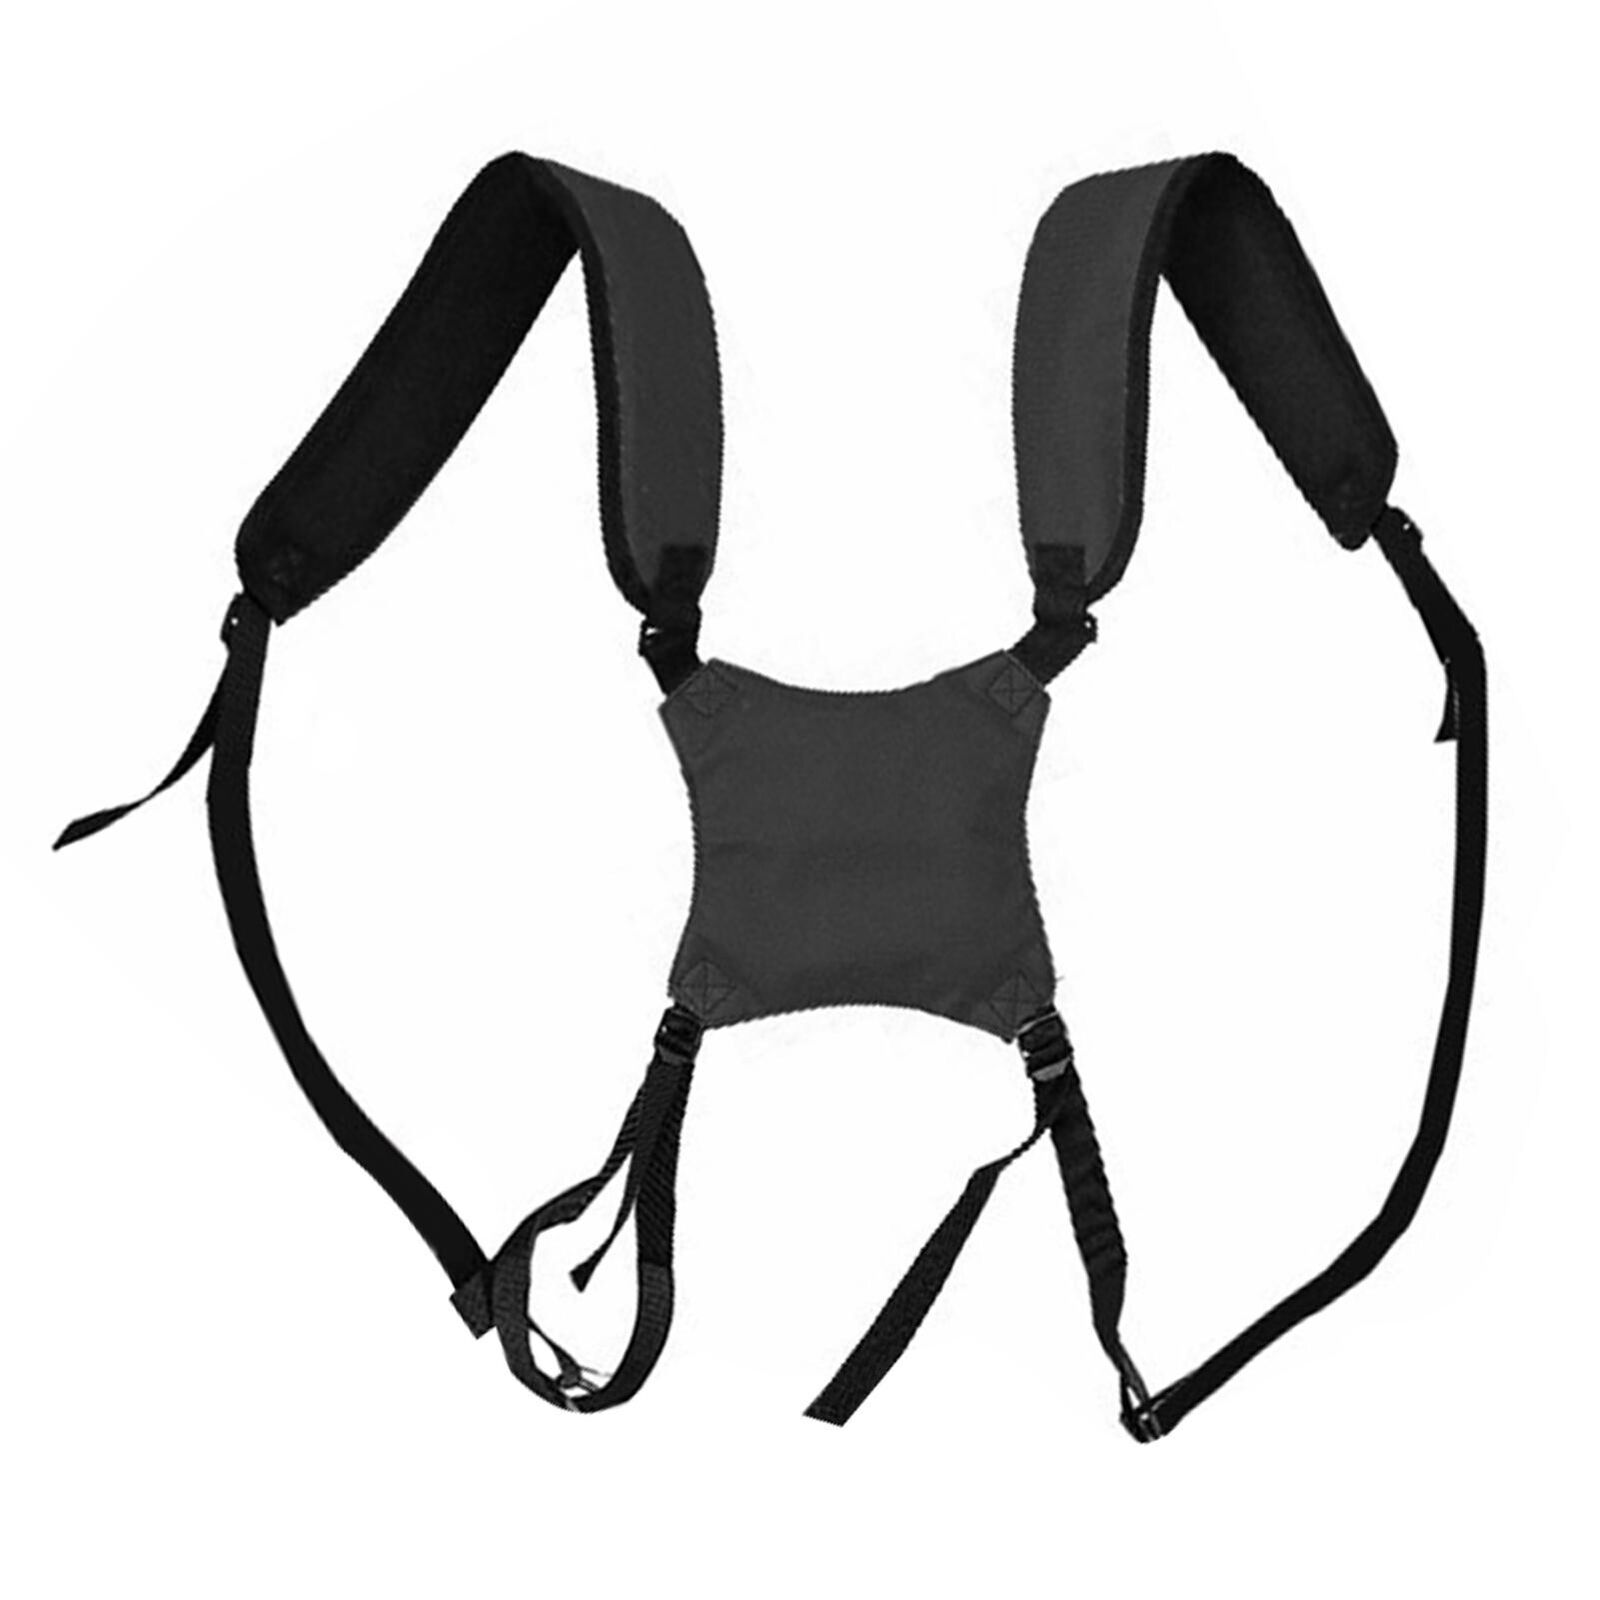 Golf Bag Strap Replacement Comfort Double Shoulder Adjustable Shoulder Strap